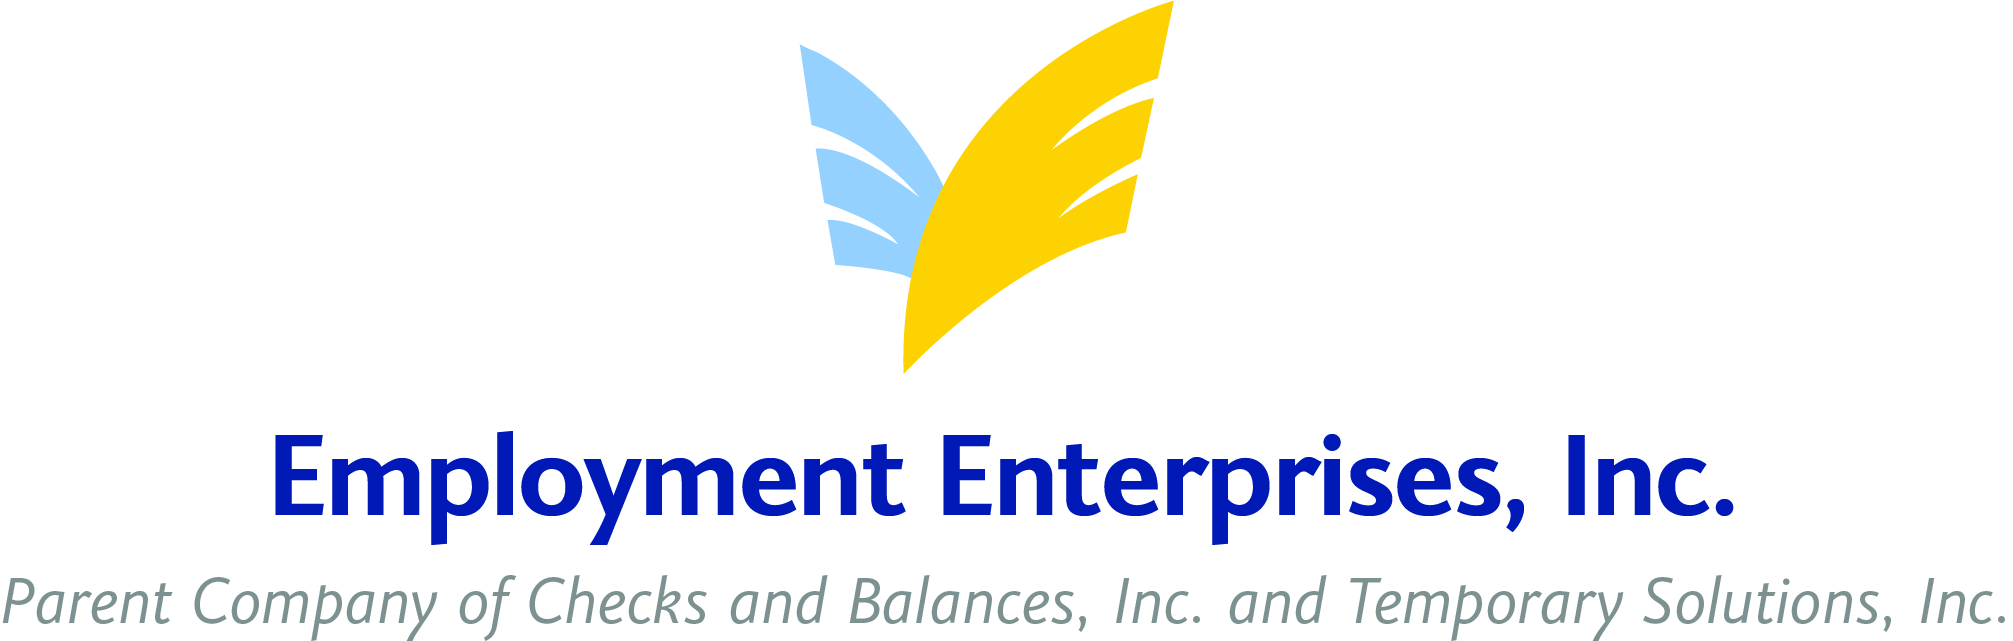 Employment Enterprises, Inc.